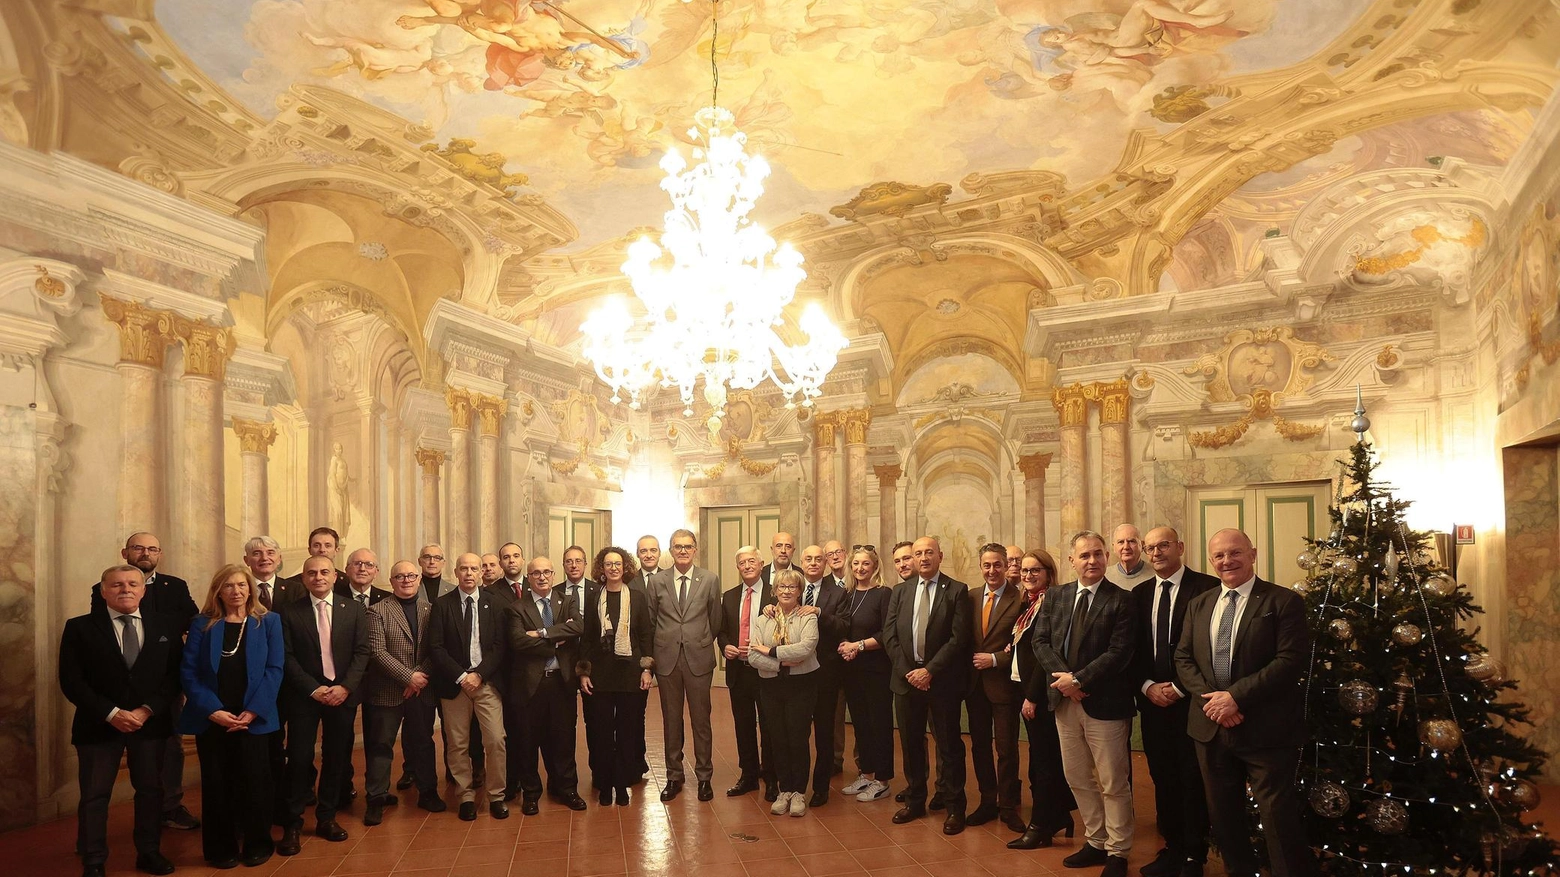 Fondazione Mps e Contrade di Siena si incontrano per rinnovare il loro forte legame storico e condividere valori. Il presidente della Fondazione conferma il protettorato e progetti per valorizzare il patrimonio locale.